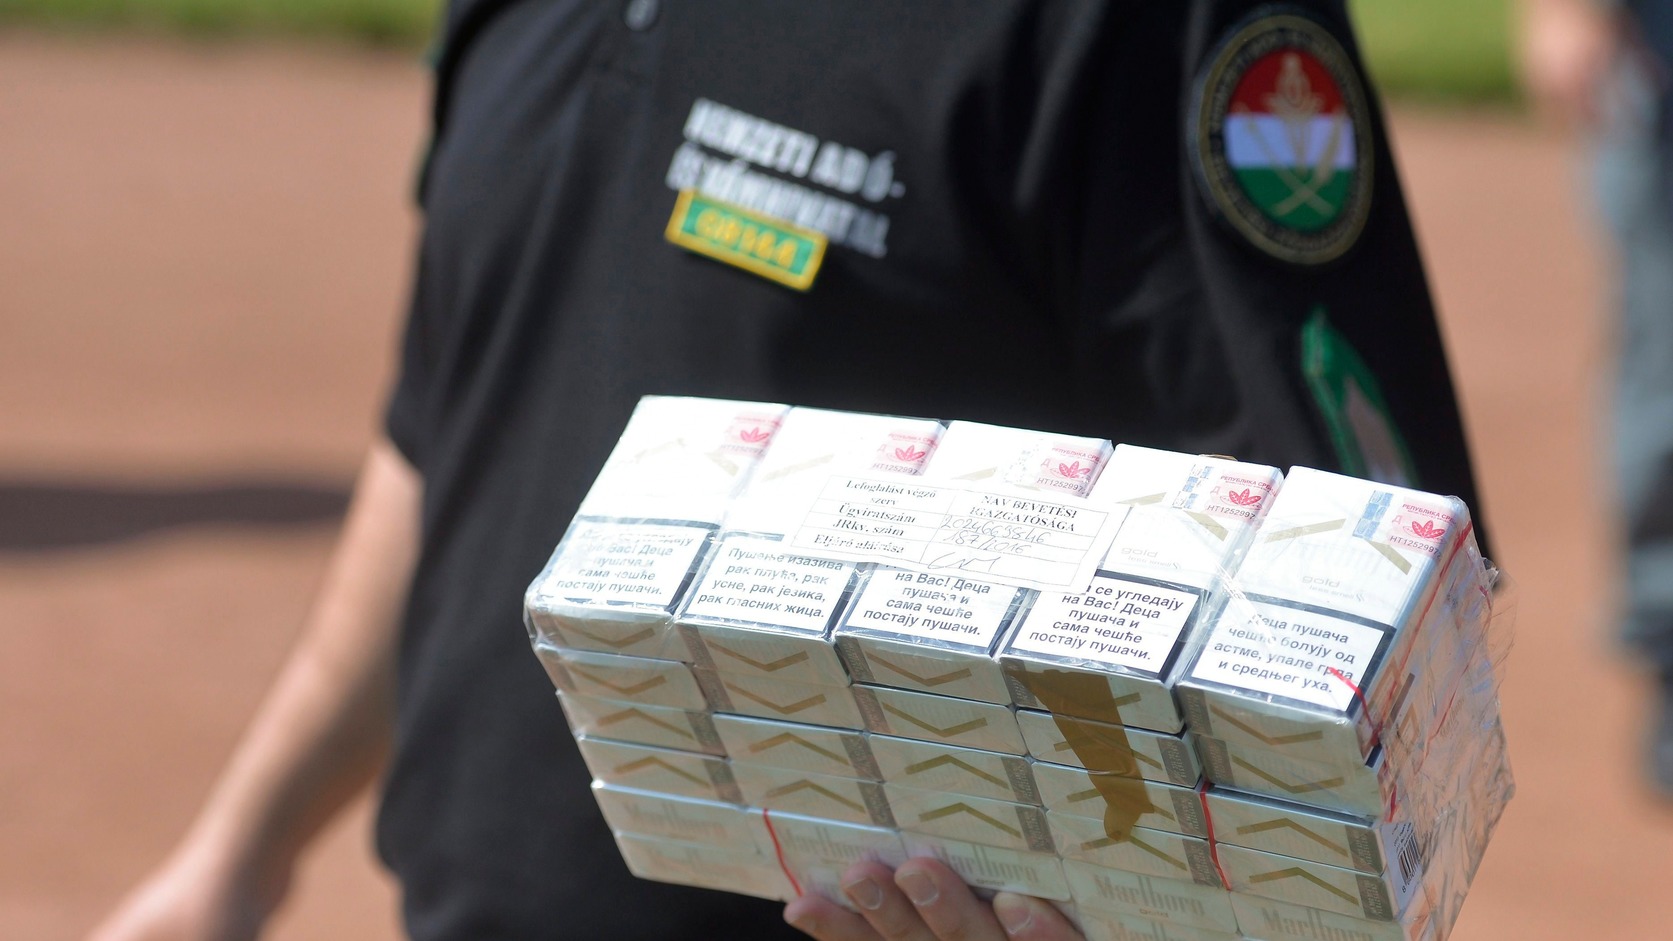 NAV: csempészcigarettát, kokaint és tiltott potencianövelőket találtak egy budapesti bűnbandánál